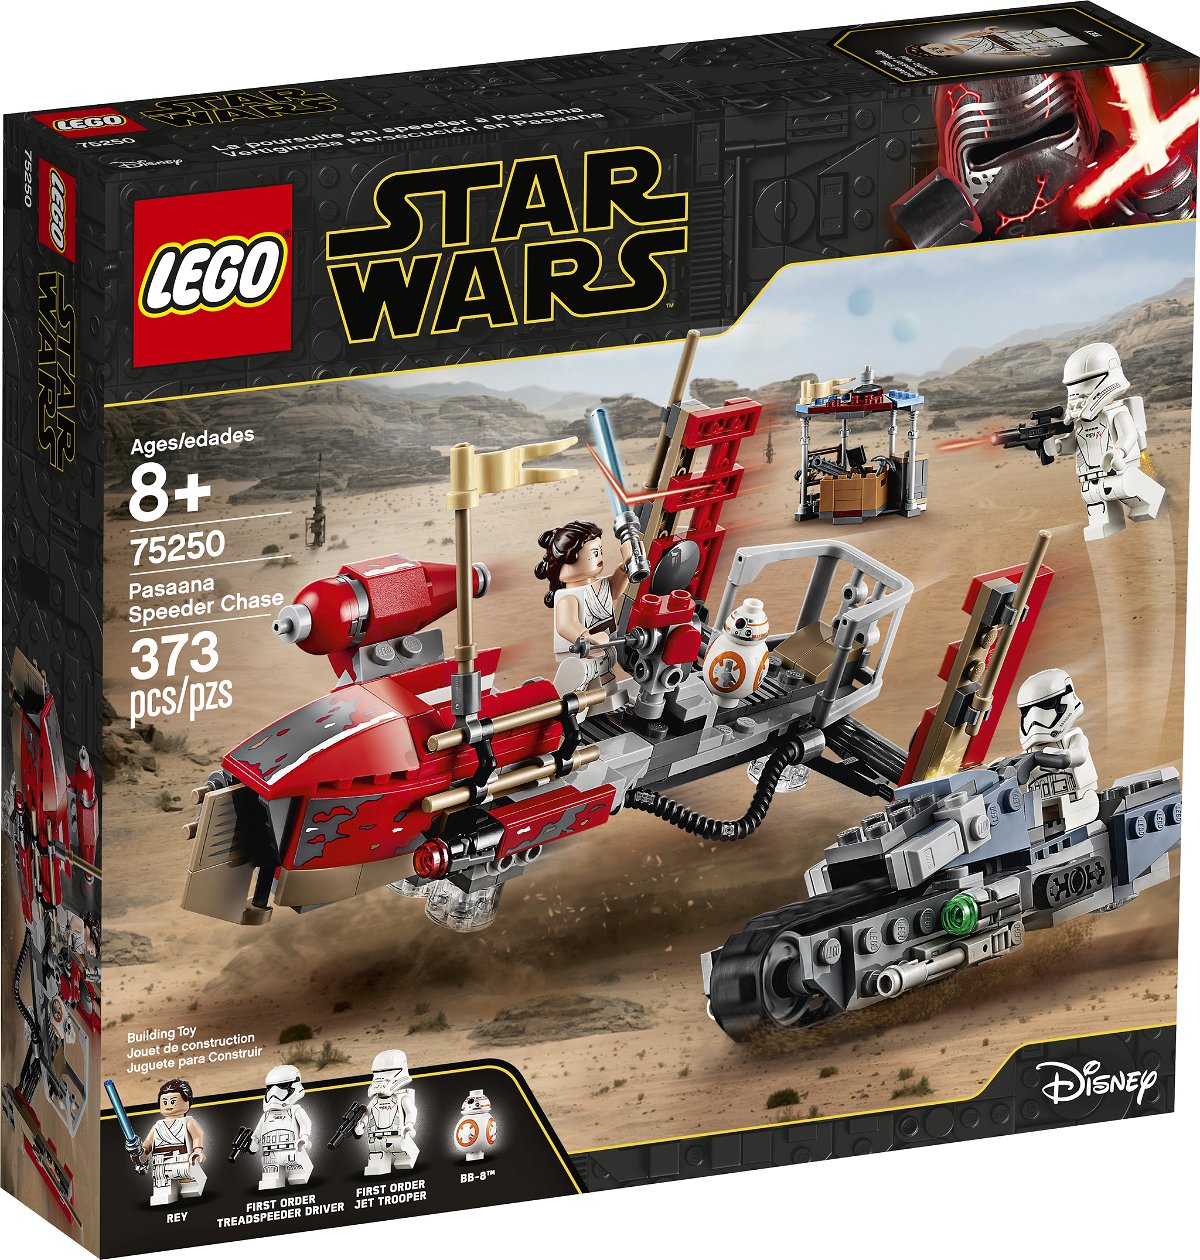 Nell'immagine del box LEGO Rey e BB-8 sono su uno speeder rosso inseguiti da un soldato del Primo Ordine